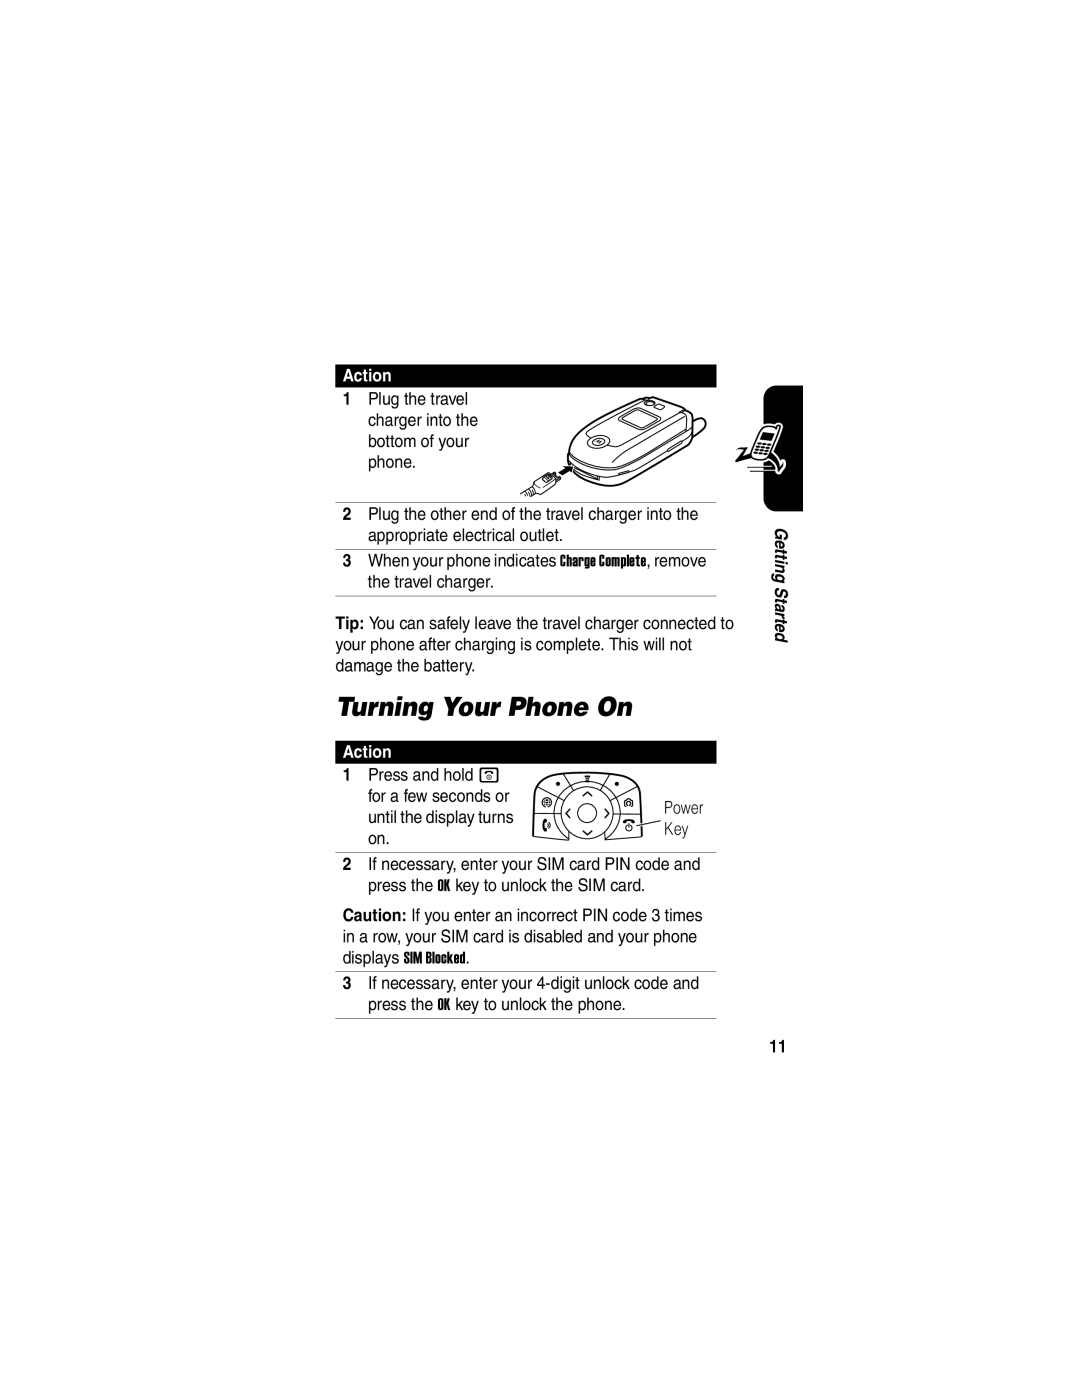 Motorola V635 manual Turning Your Phone On, Action 